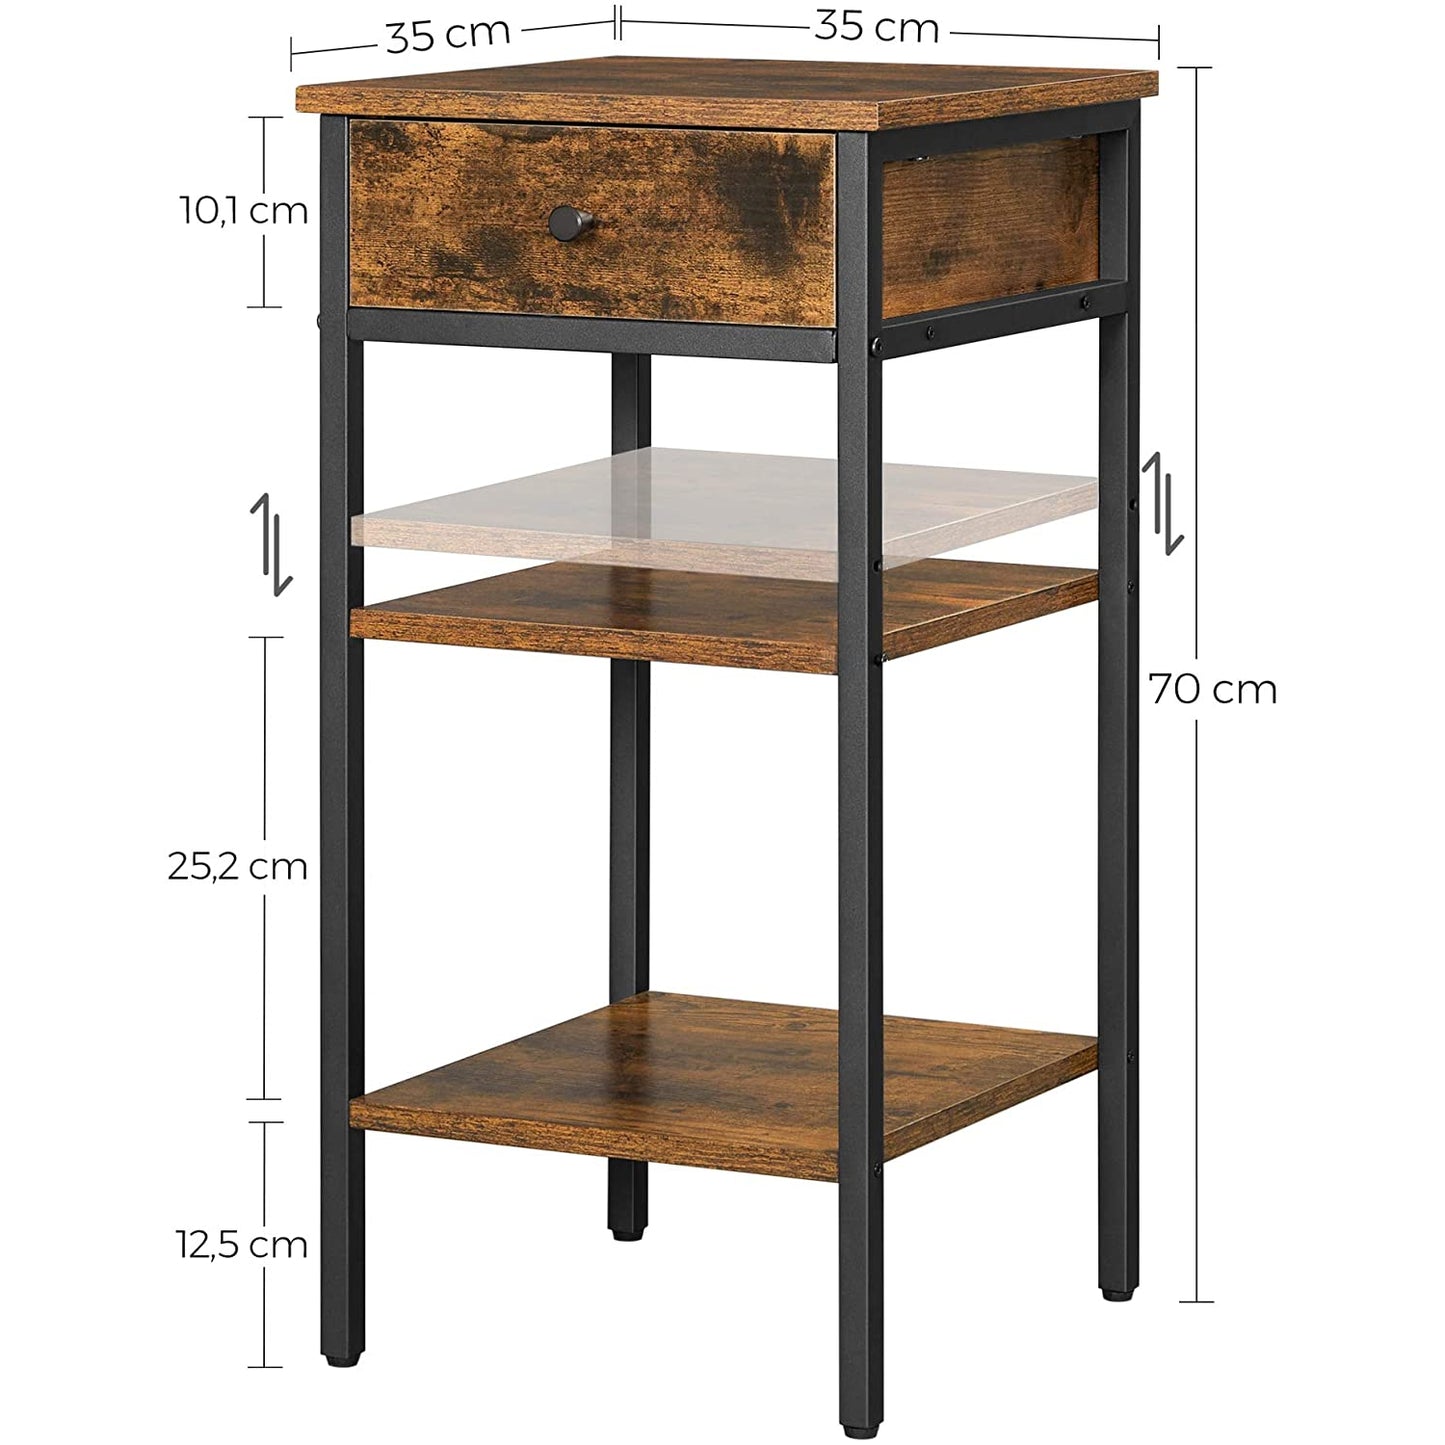 Nancy's Meridian Bedside Table - Side Table - Drawer - 2 Shelves - 35 x 35 x 70 cm - Engineered Wood - Metal - Industrial - Brown - Black